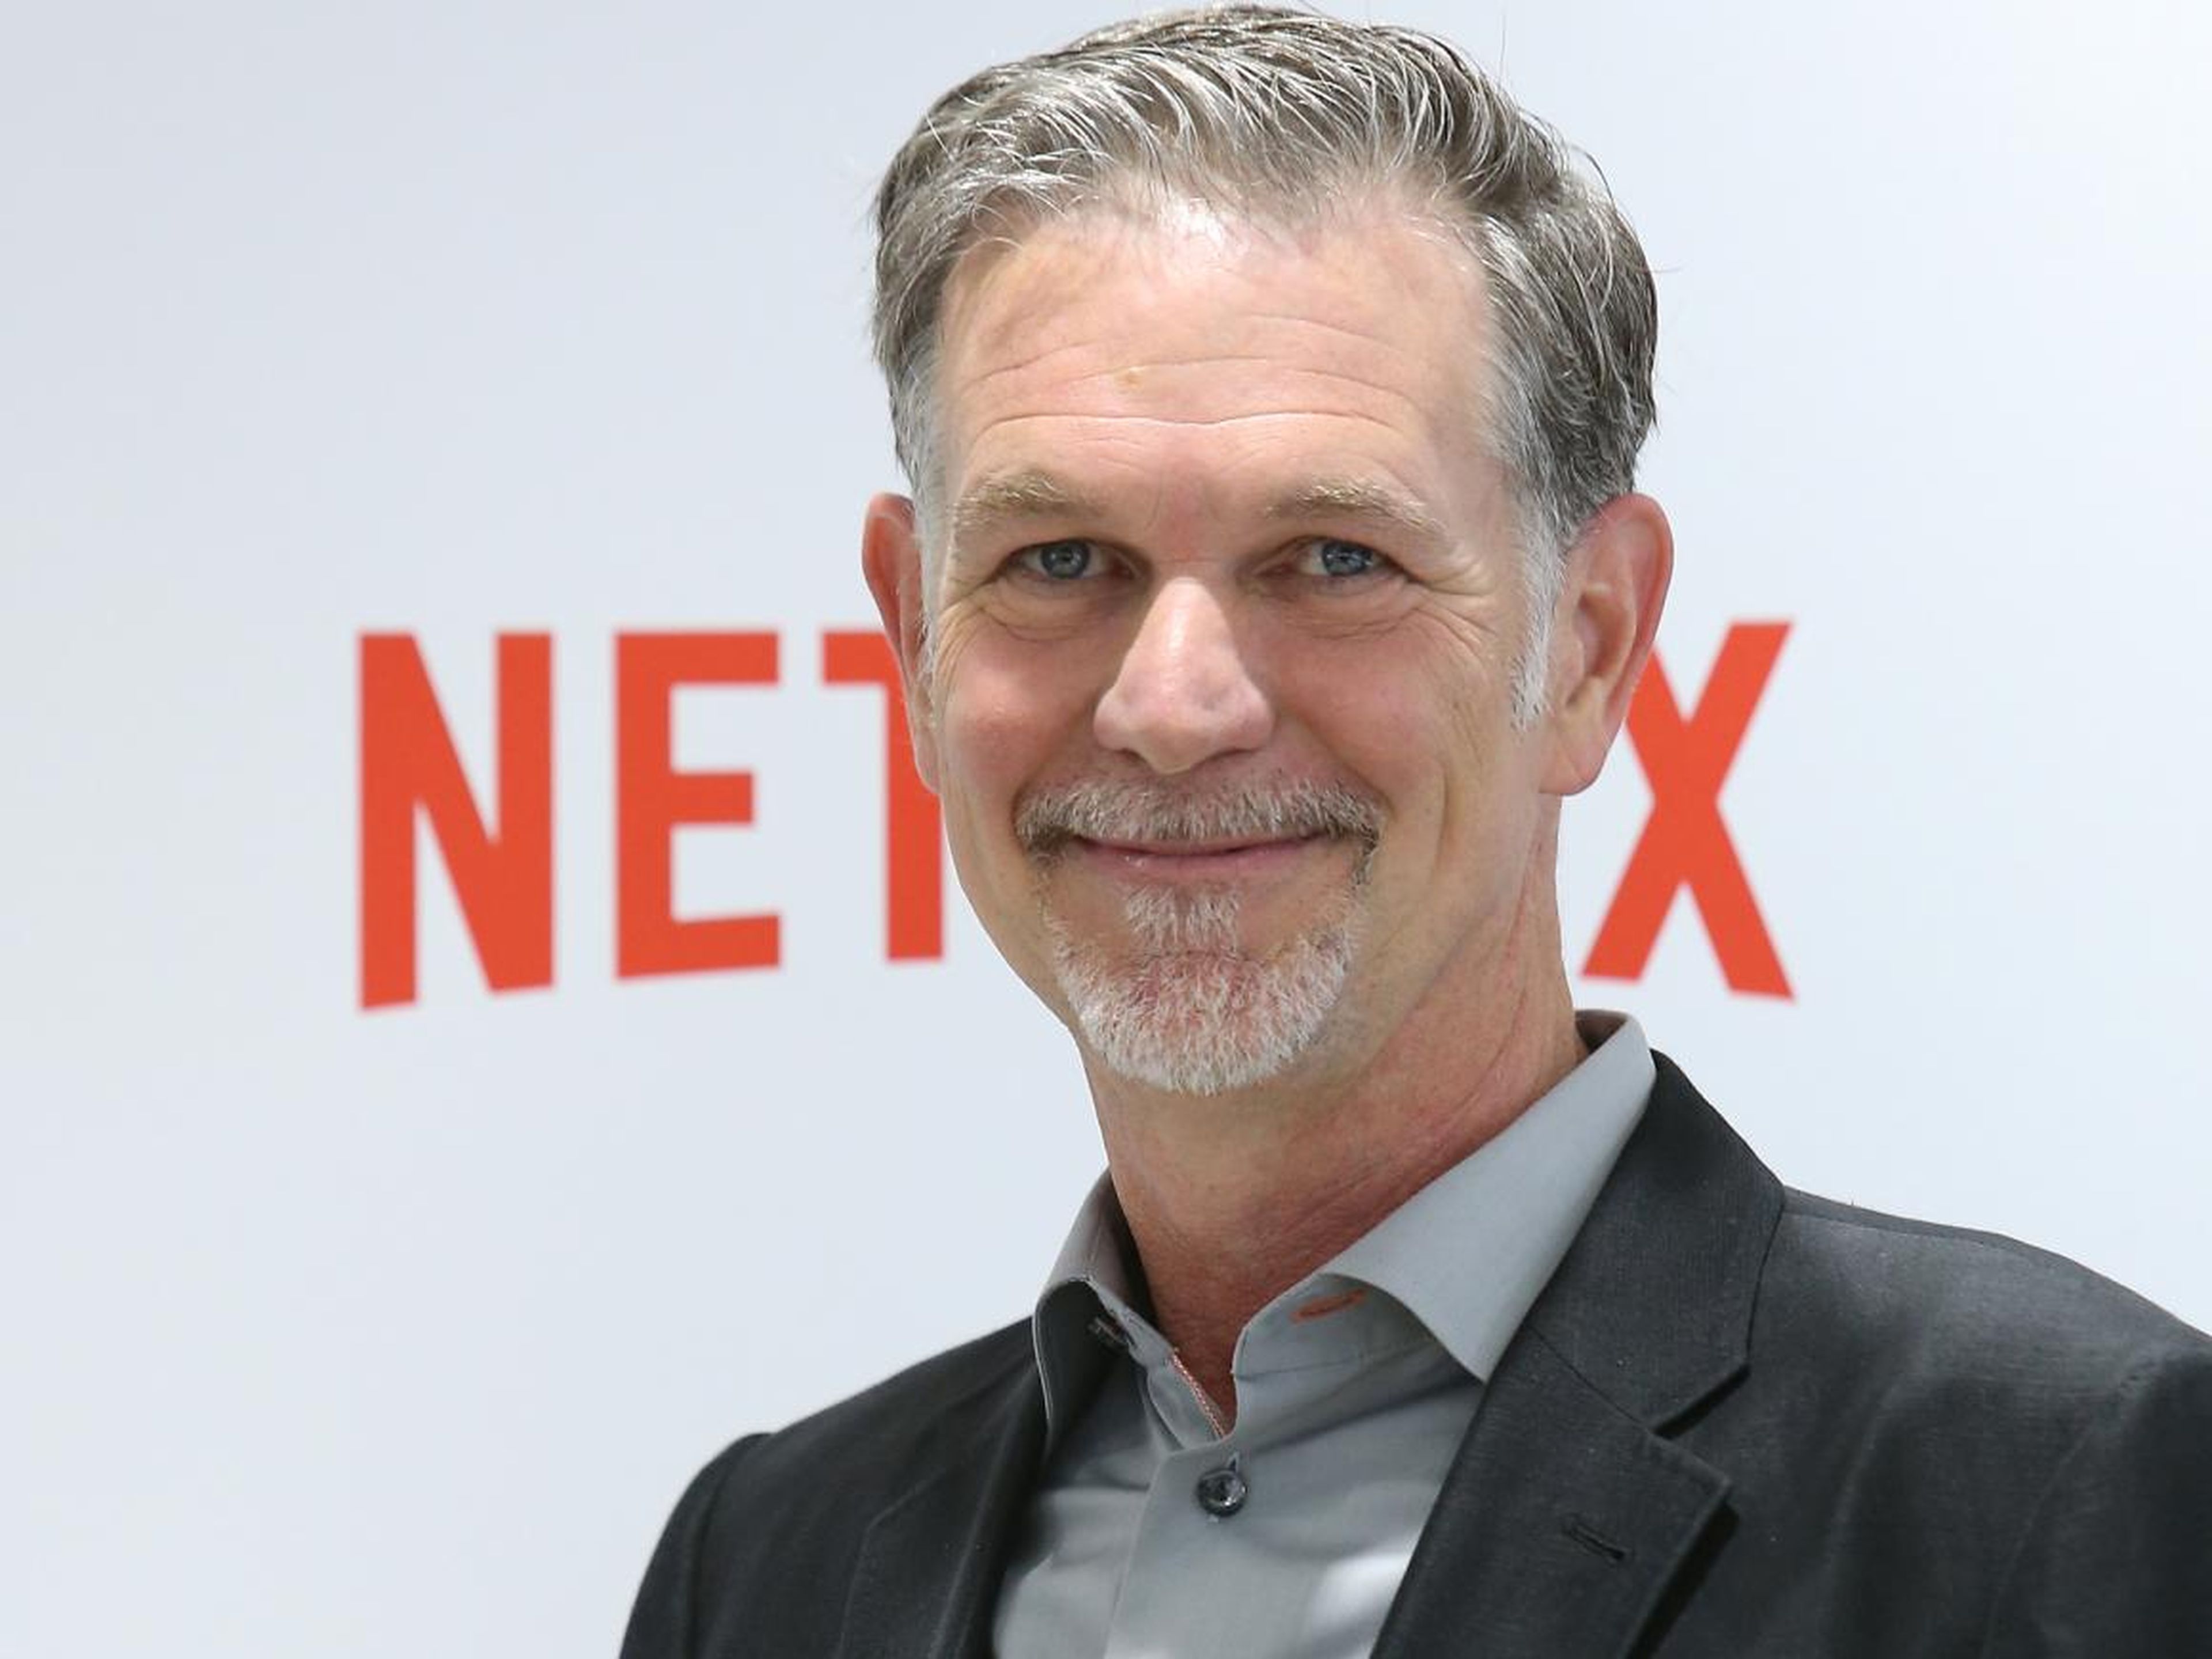 El CEO de Netflix suele realizar una "prueba de permanencia", que ha servido paras despedir a su jefe de producto y amigo desde hace 18 años